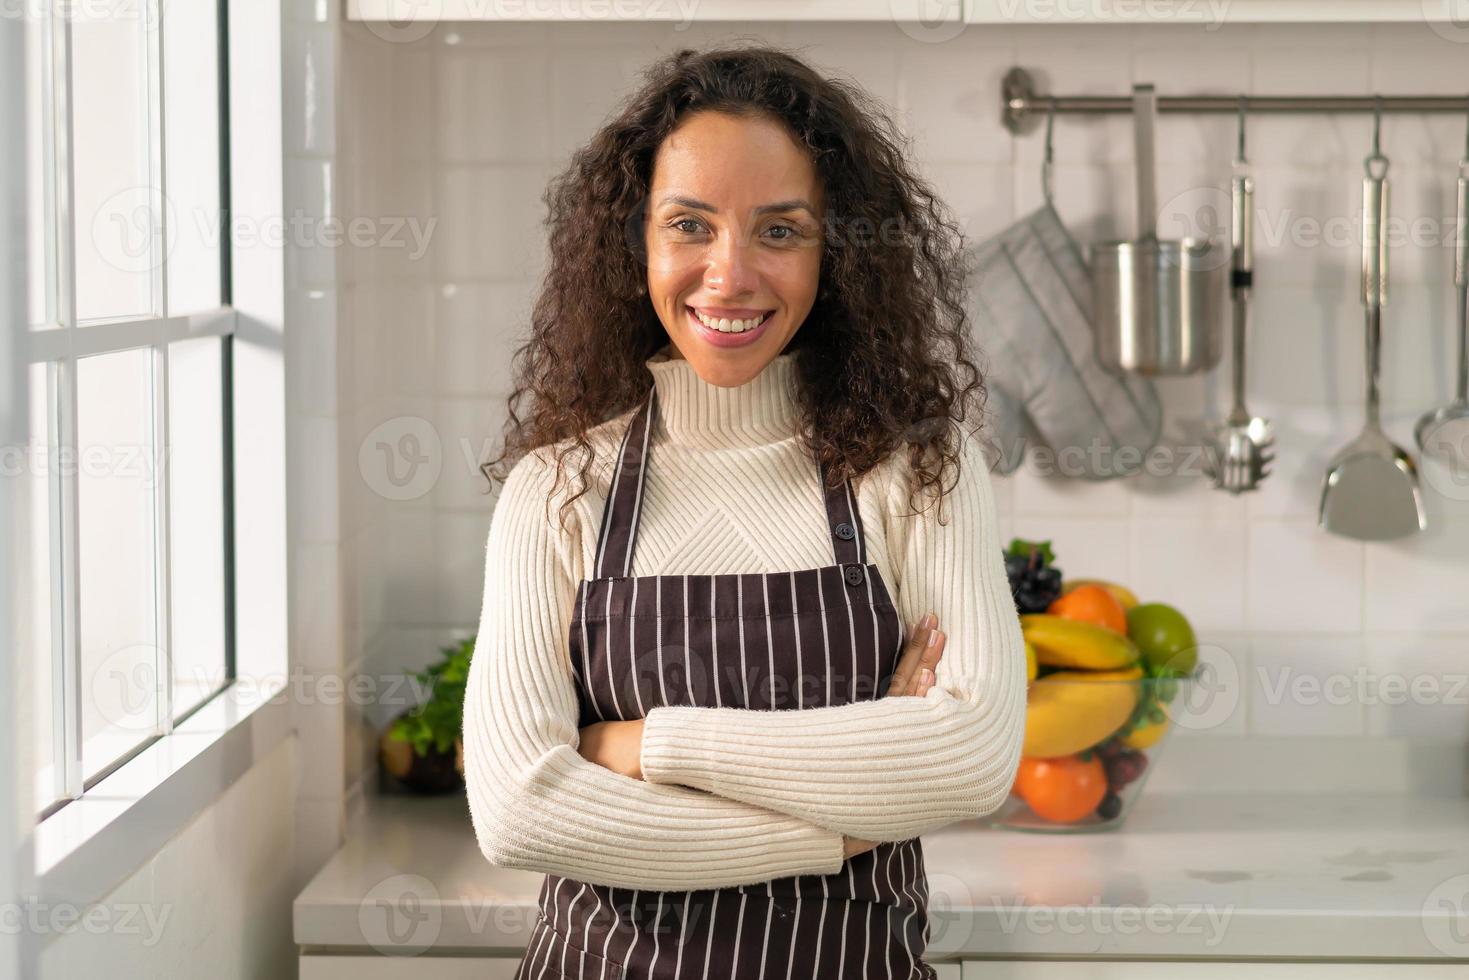 retrato de mulher latina na cozinha foto